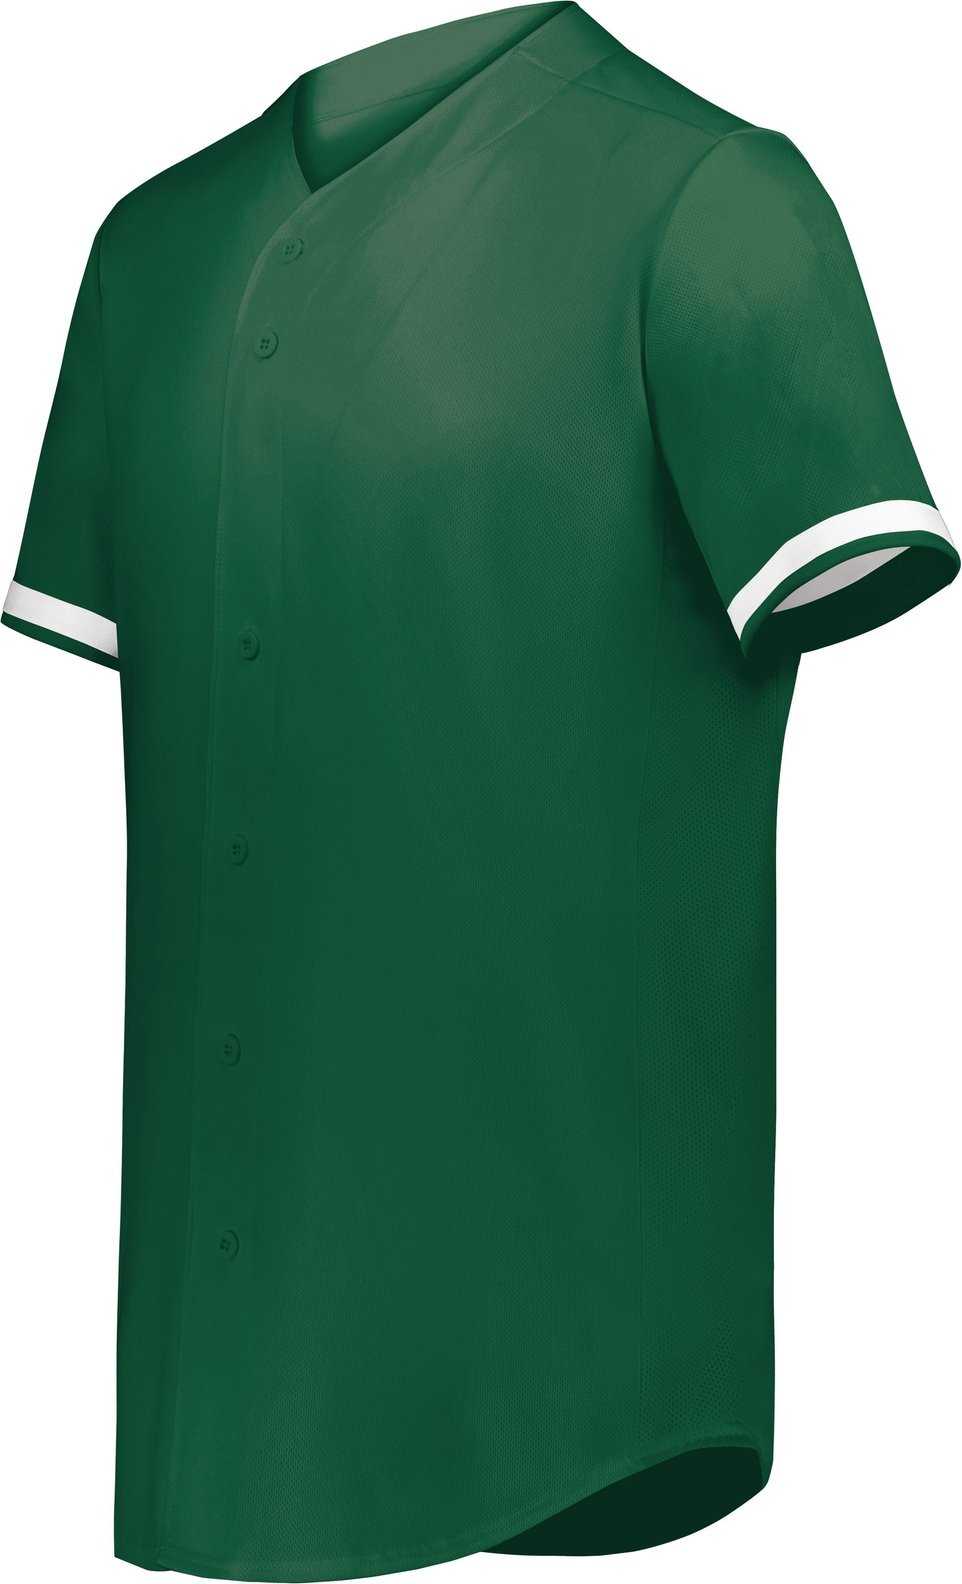 Augusta 6909 Cutter+ Full Button Baseball Jersey - Dark Green White - HIT a Double